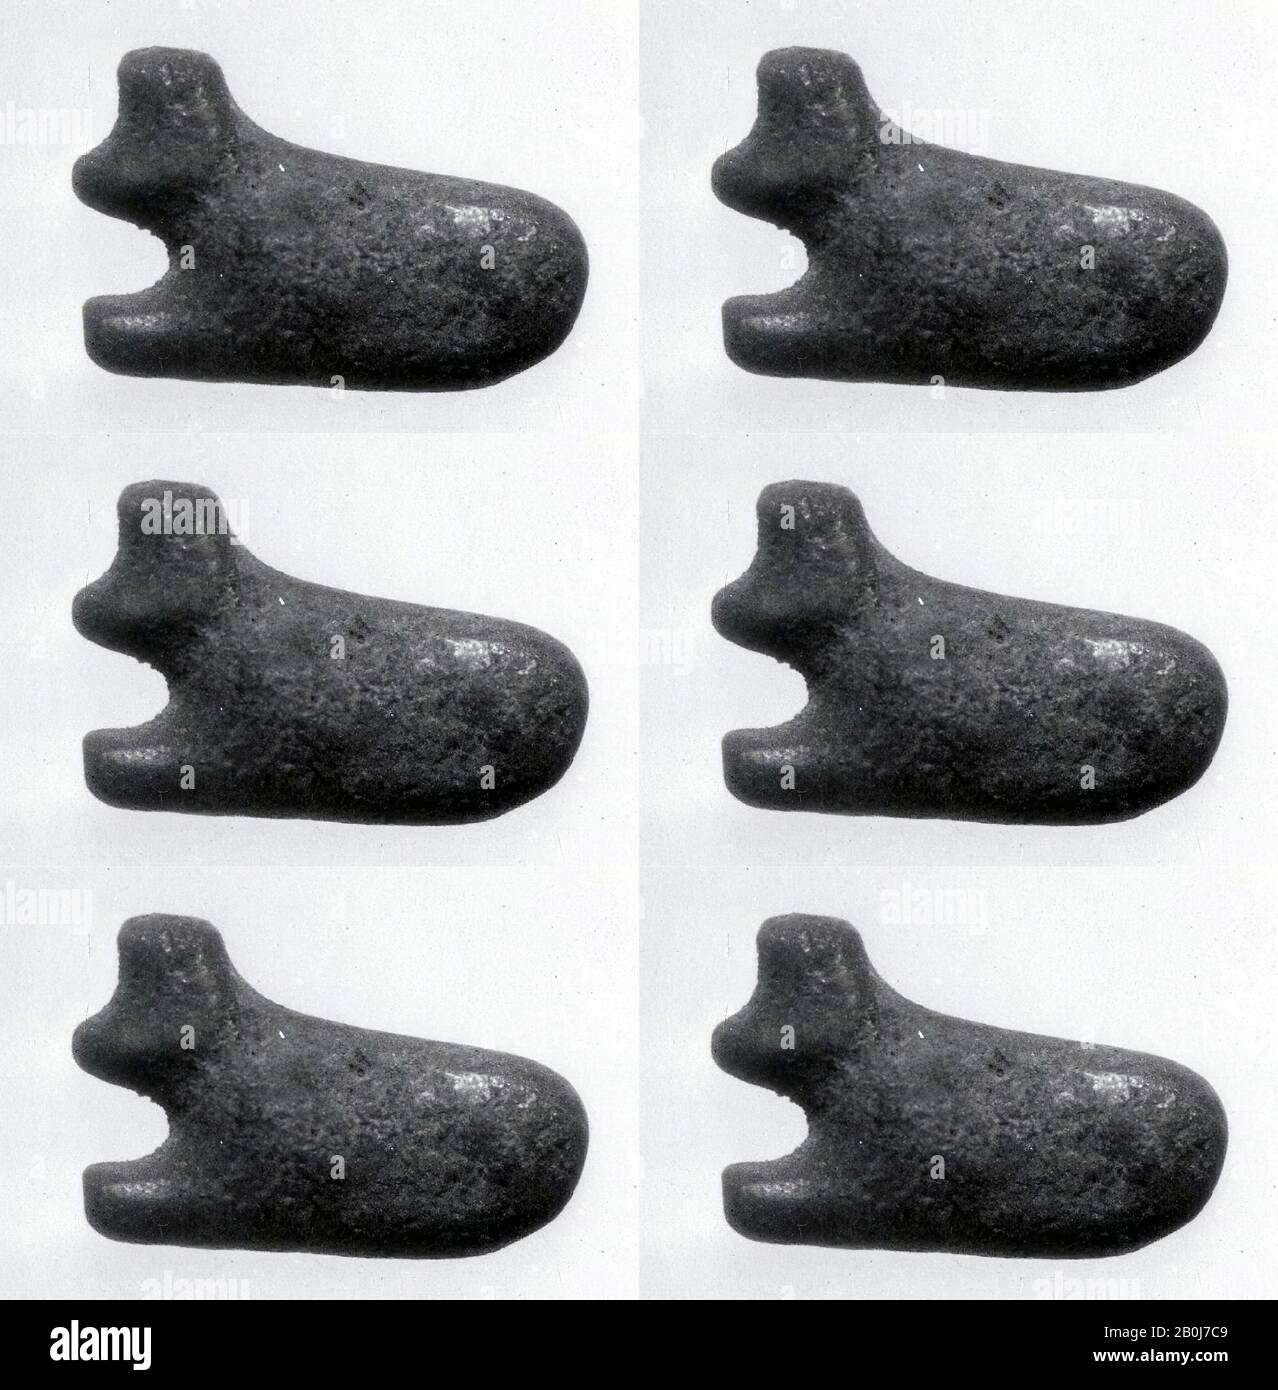 Amuleto di una mucca?, Periodo tolemaico, Data 306–30 a.C., Dall'Egitto, dall'Alto Egitto settentrionale, Dendera, Faience Foto Stock